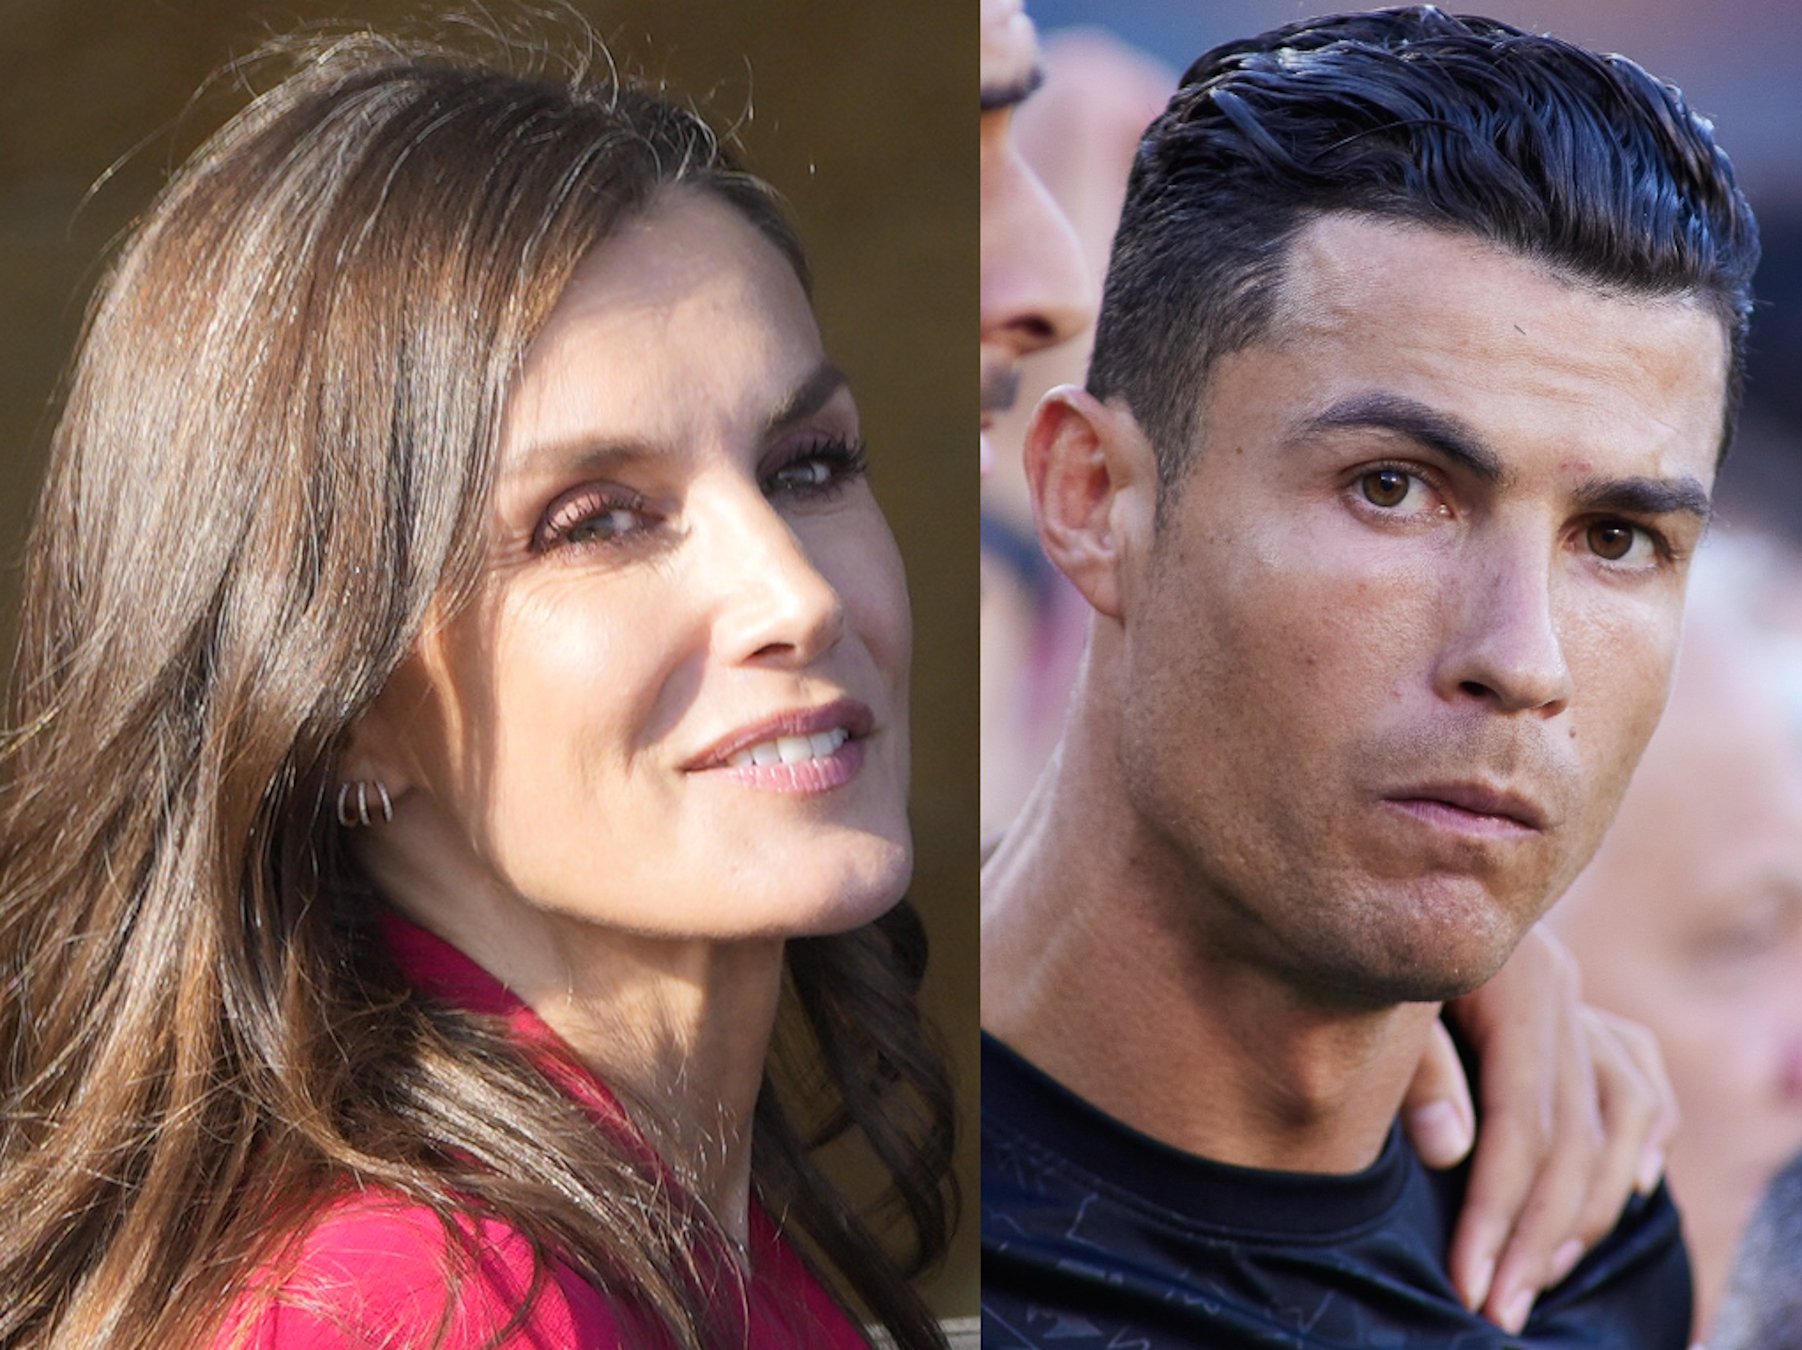 Letícia i Cristiano Ronaldo, obsessió compartida, consell del futbolista a la reina